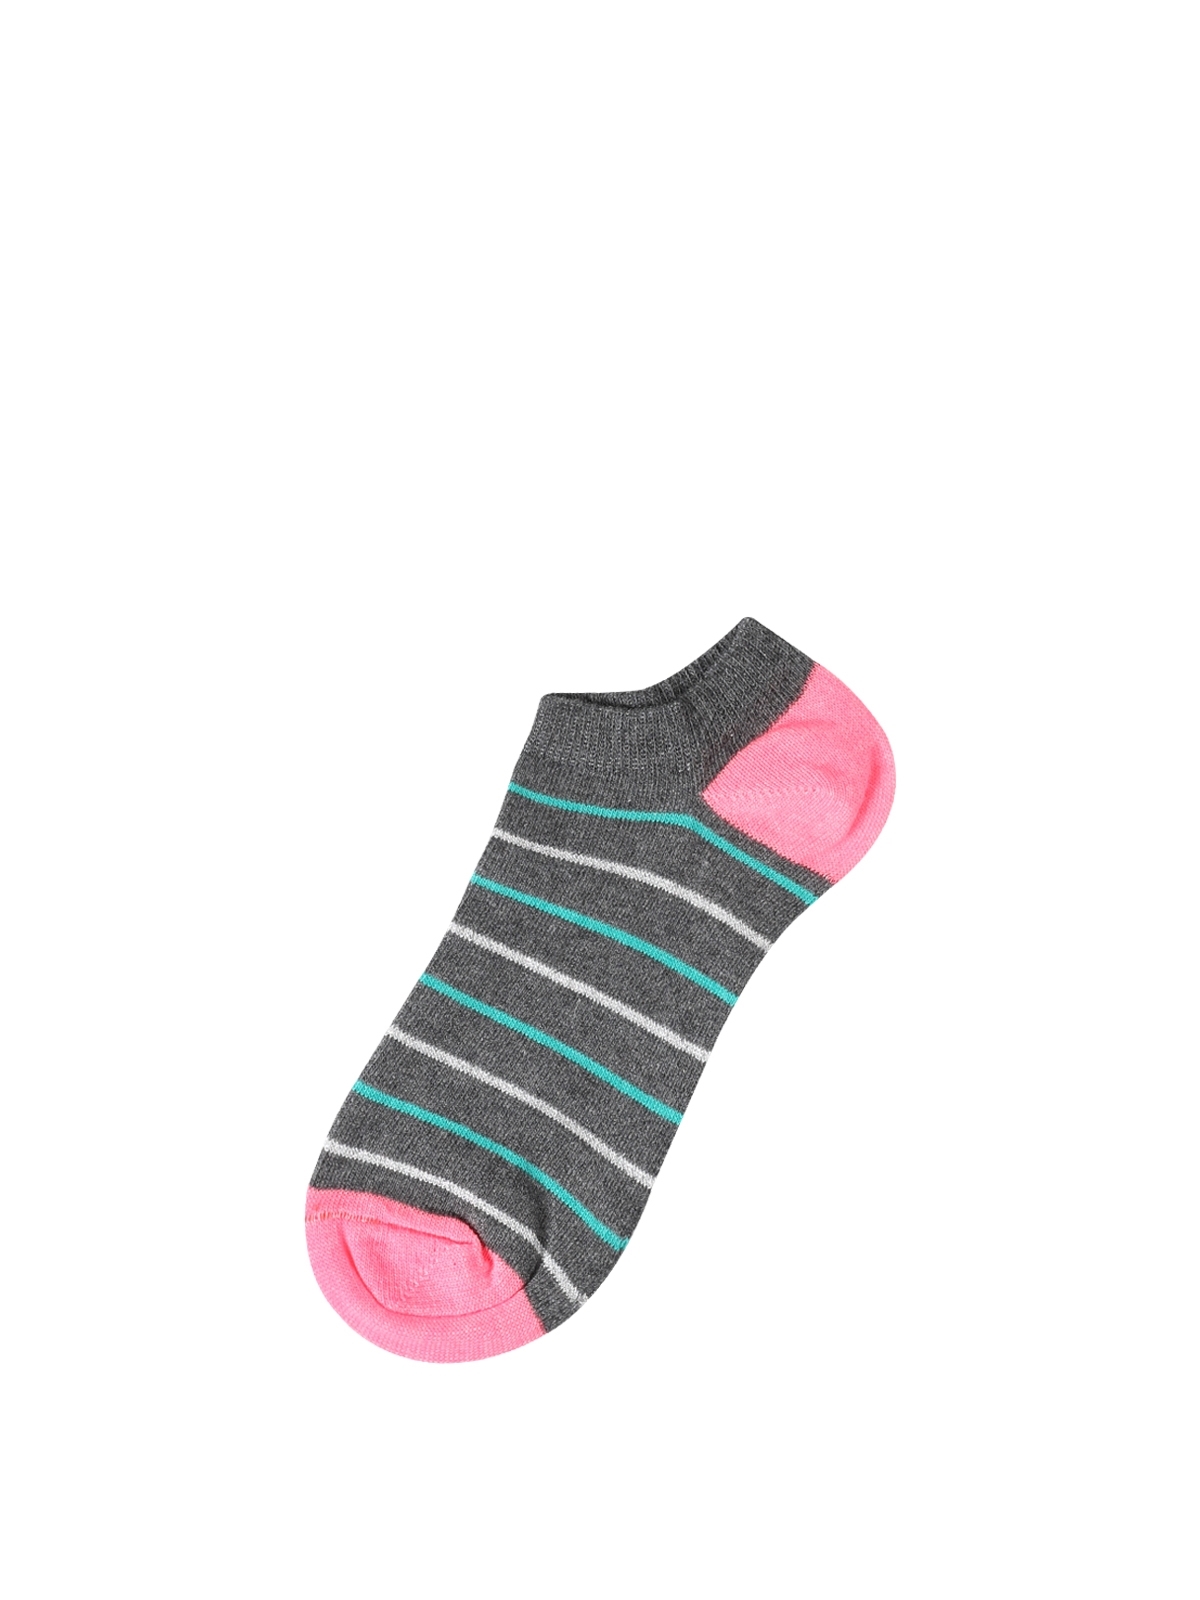 Baskılı Çok Renkli Kadın Çorap